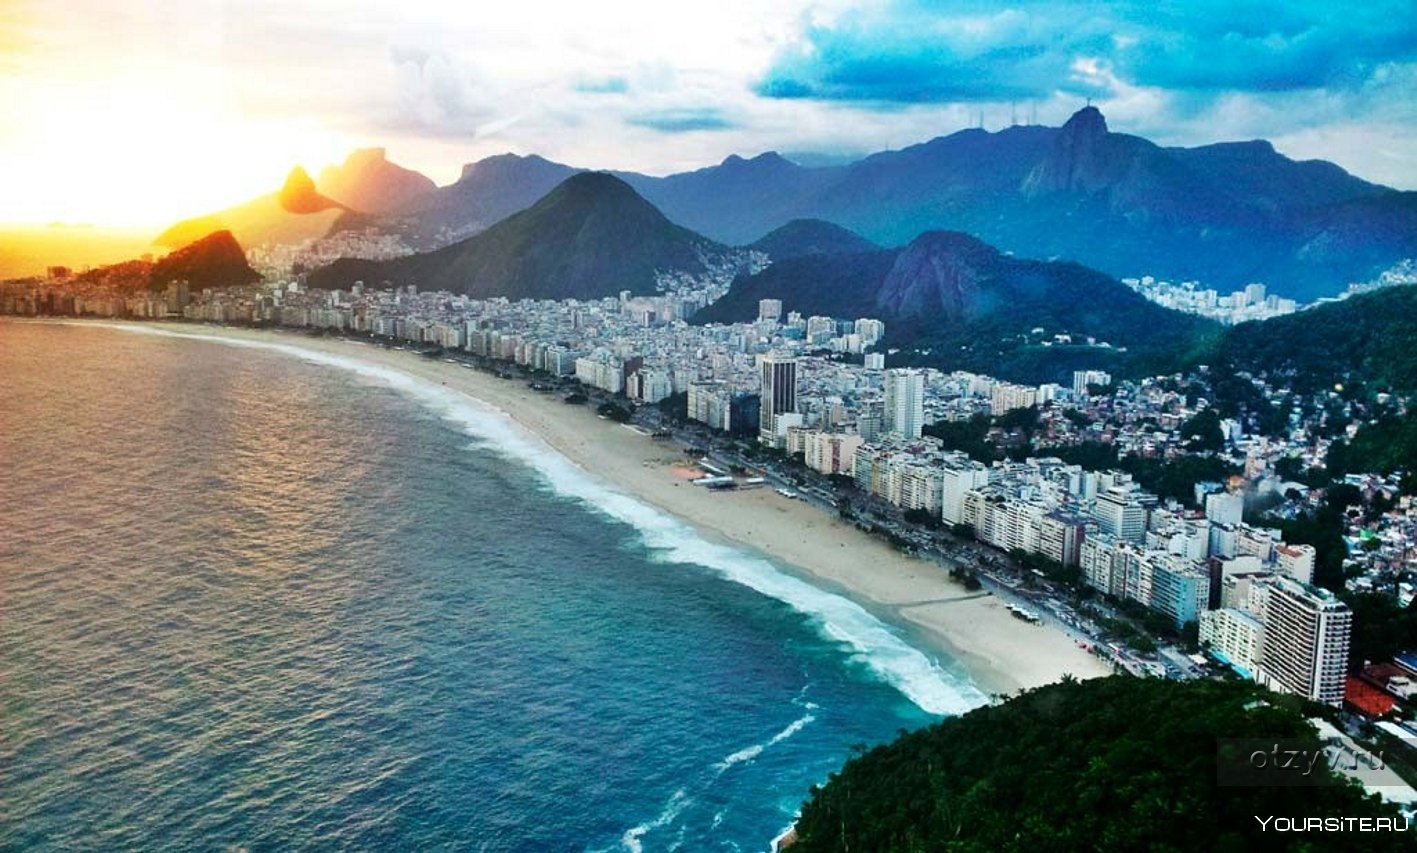 Бразилия омывается океанами. Пляж Копакабана в Рио-де-Жанейро. Копакабана, Рио-де-Жанейро, Бразилия. Ипанема Бразилия. Бразилия пляж Копакабана.